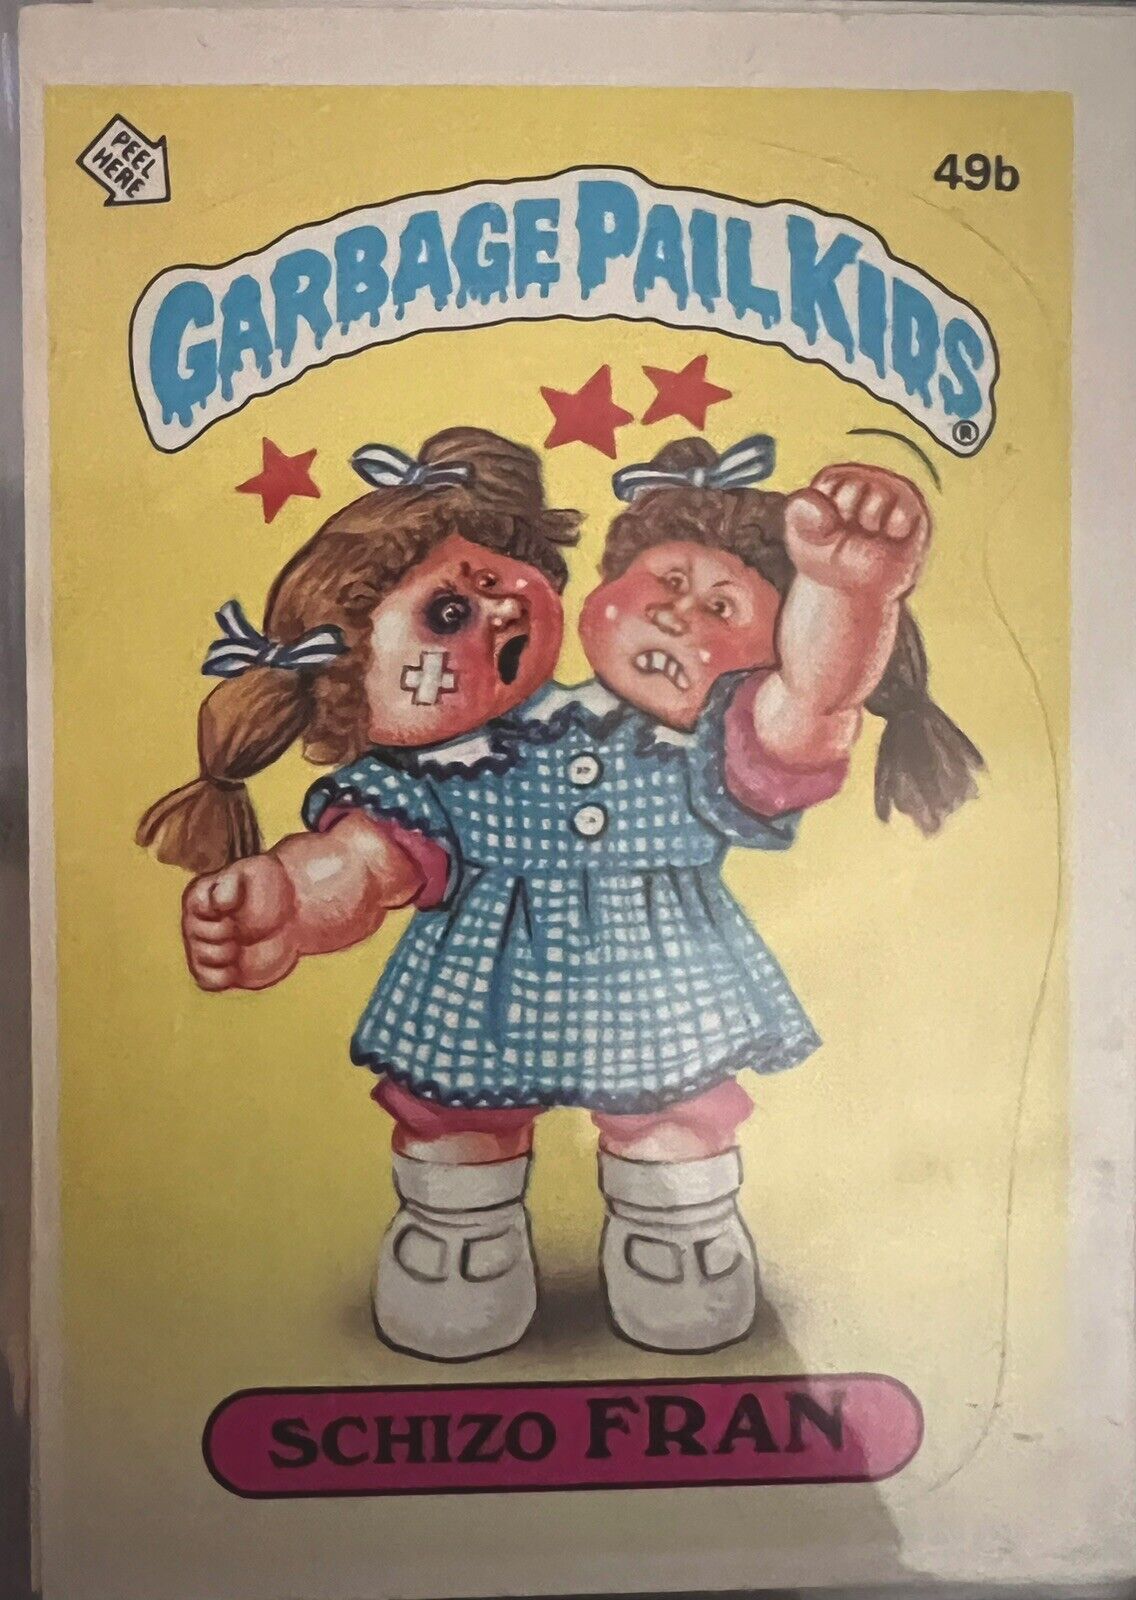 1985 Topps Garbage Pail Kids OS2 Series 2 Schizo Fran #49b GPK Trading Card